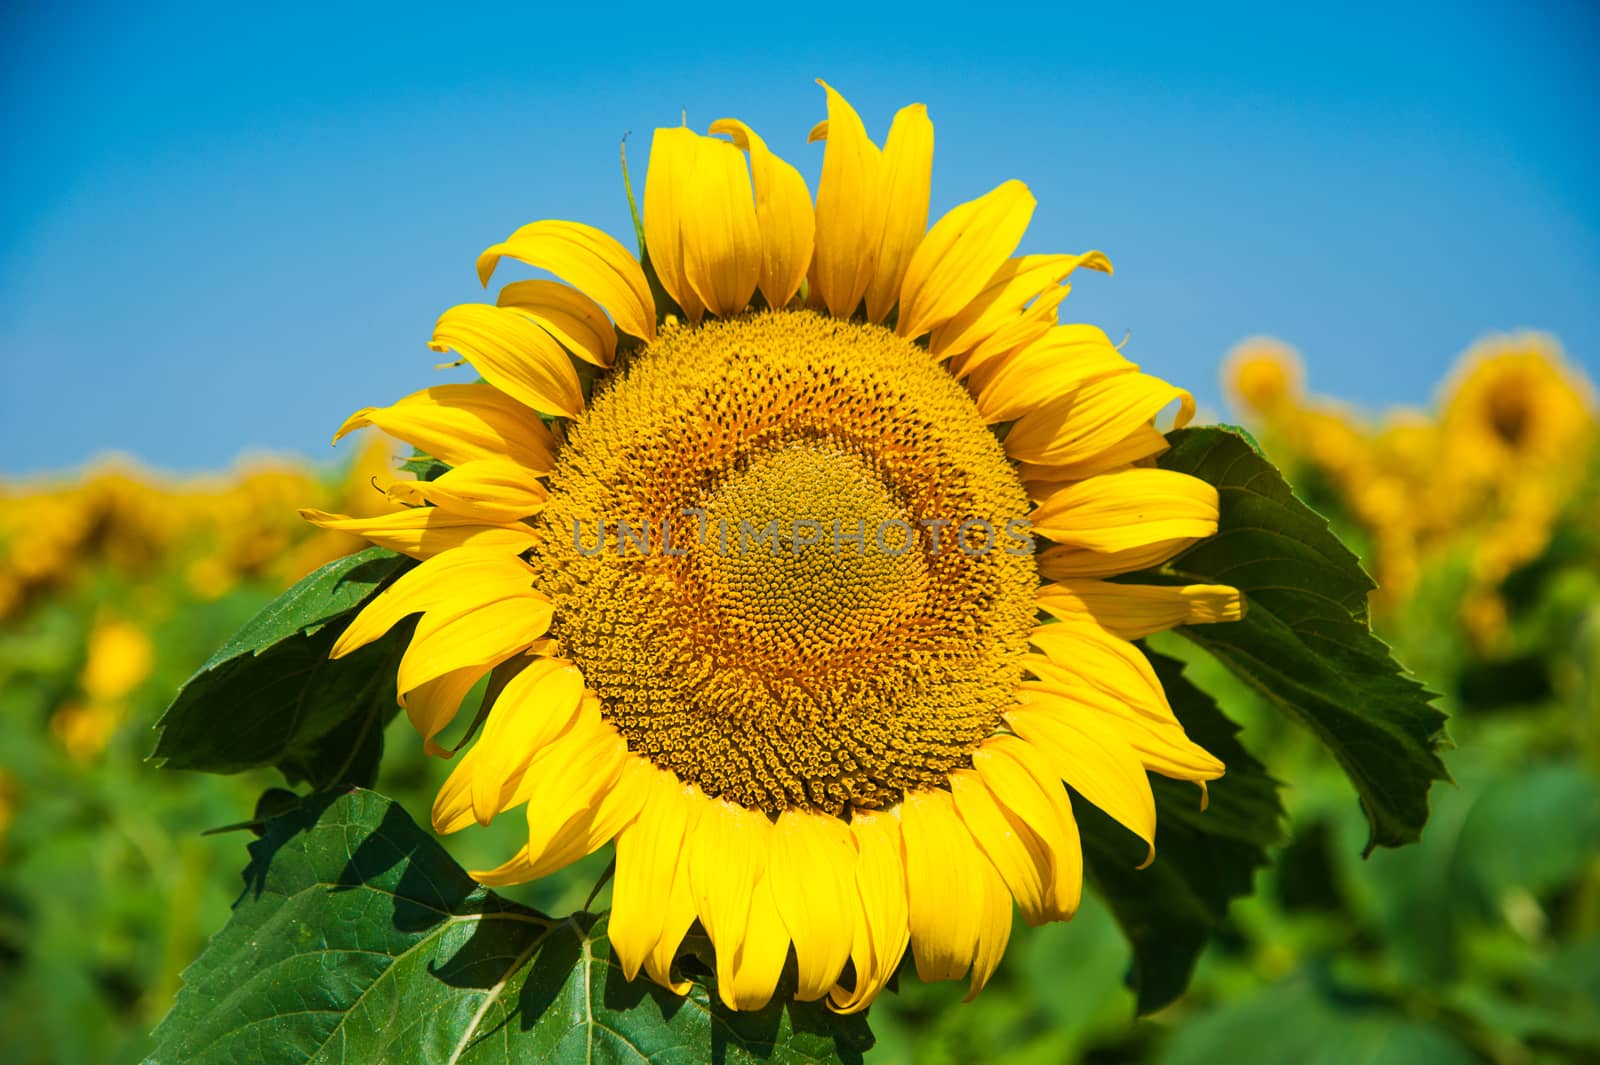 Sunflower field. Summer landscape by grigorenko